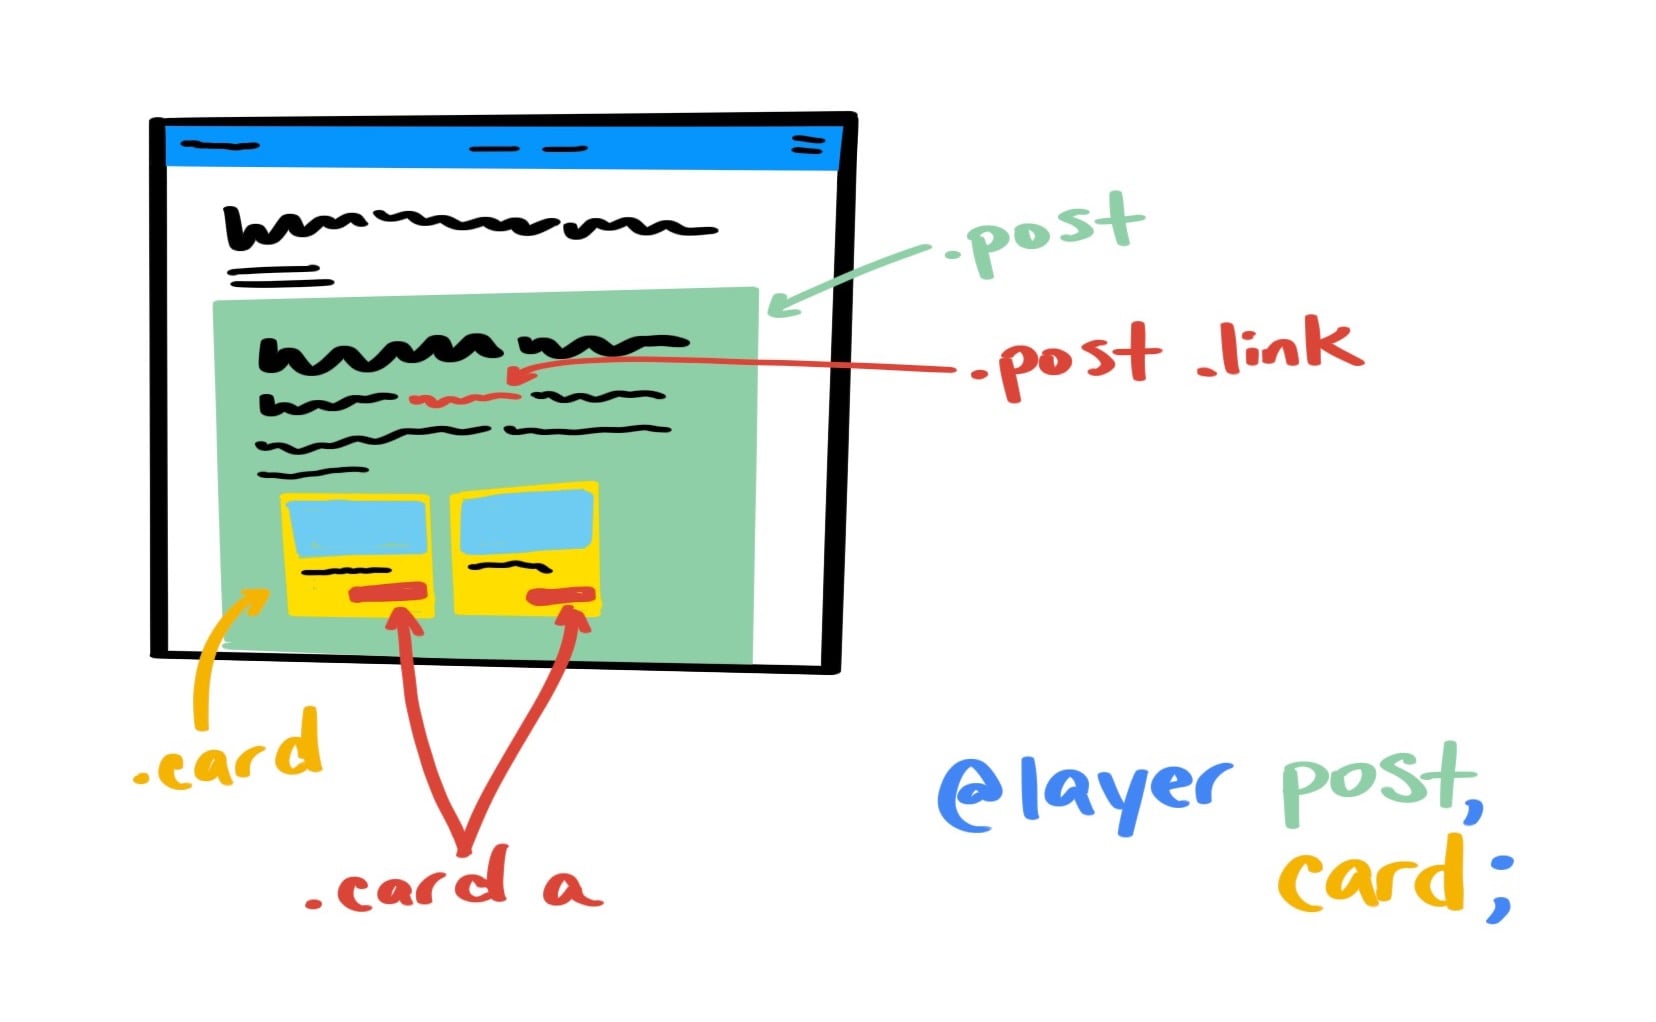 Ilustracja z prezentacji projektu przedstawiająca podział UI